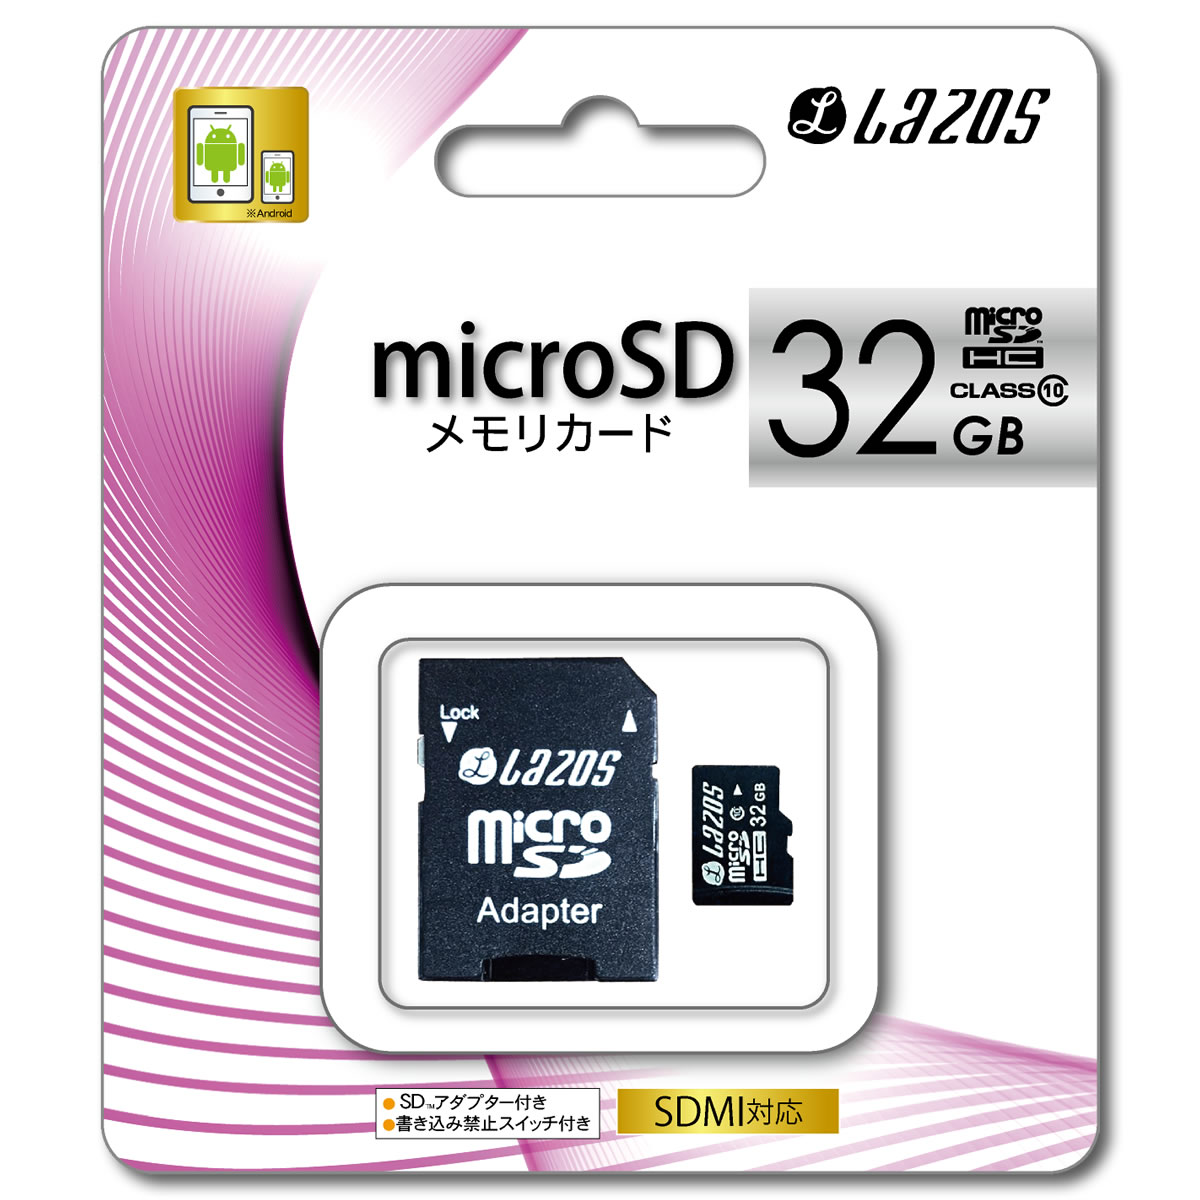 Lazos L-32MS10 Lazos microSDHCメモリーカード 32GB CLAS10 マイクロSDカード L32MS10 microSD 32GB アダプター付 スマートフォン ストレージ 外部メモリ 大容量 防犯カメラ録画 マイクロSDカード 32GB CLASS10 1